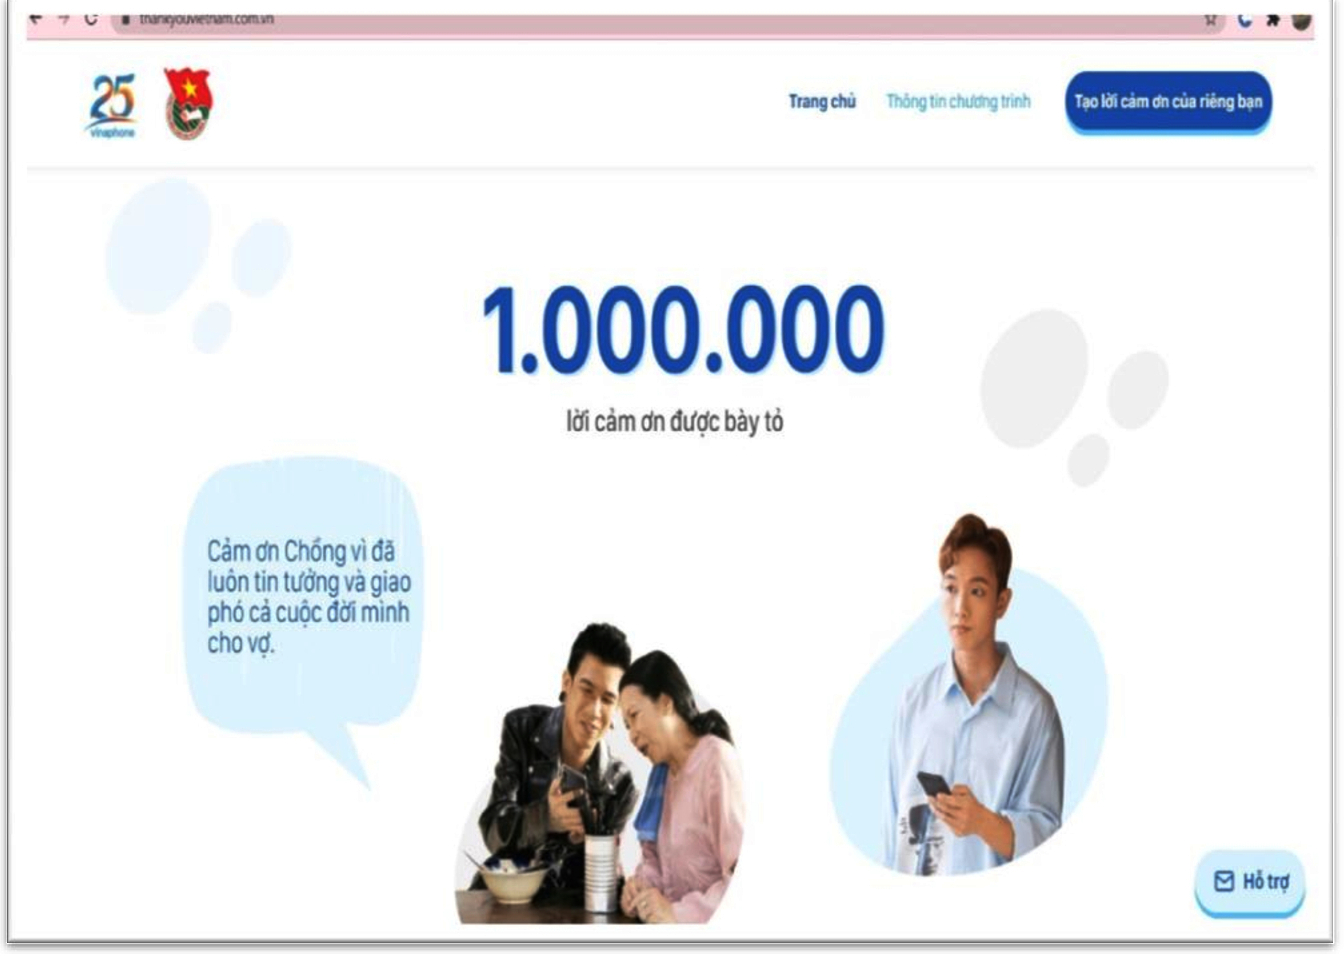 #THANK YOU, VIETNAM! – 1.000.000 LỜI CẢM ƠN ĐƯỢC KHỞI TẠO